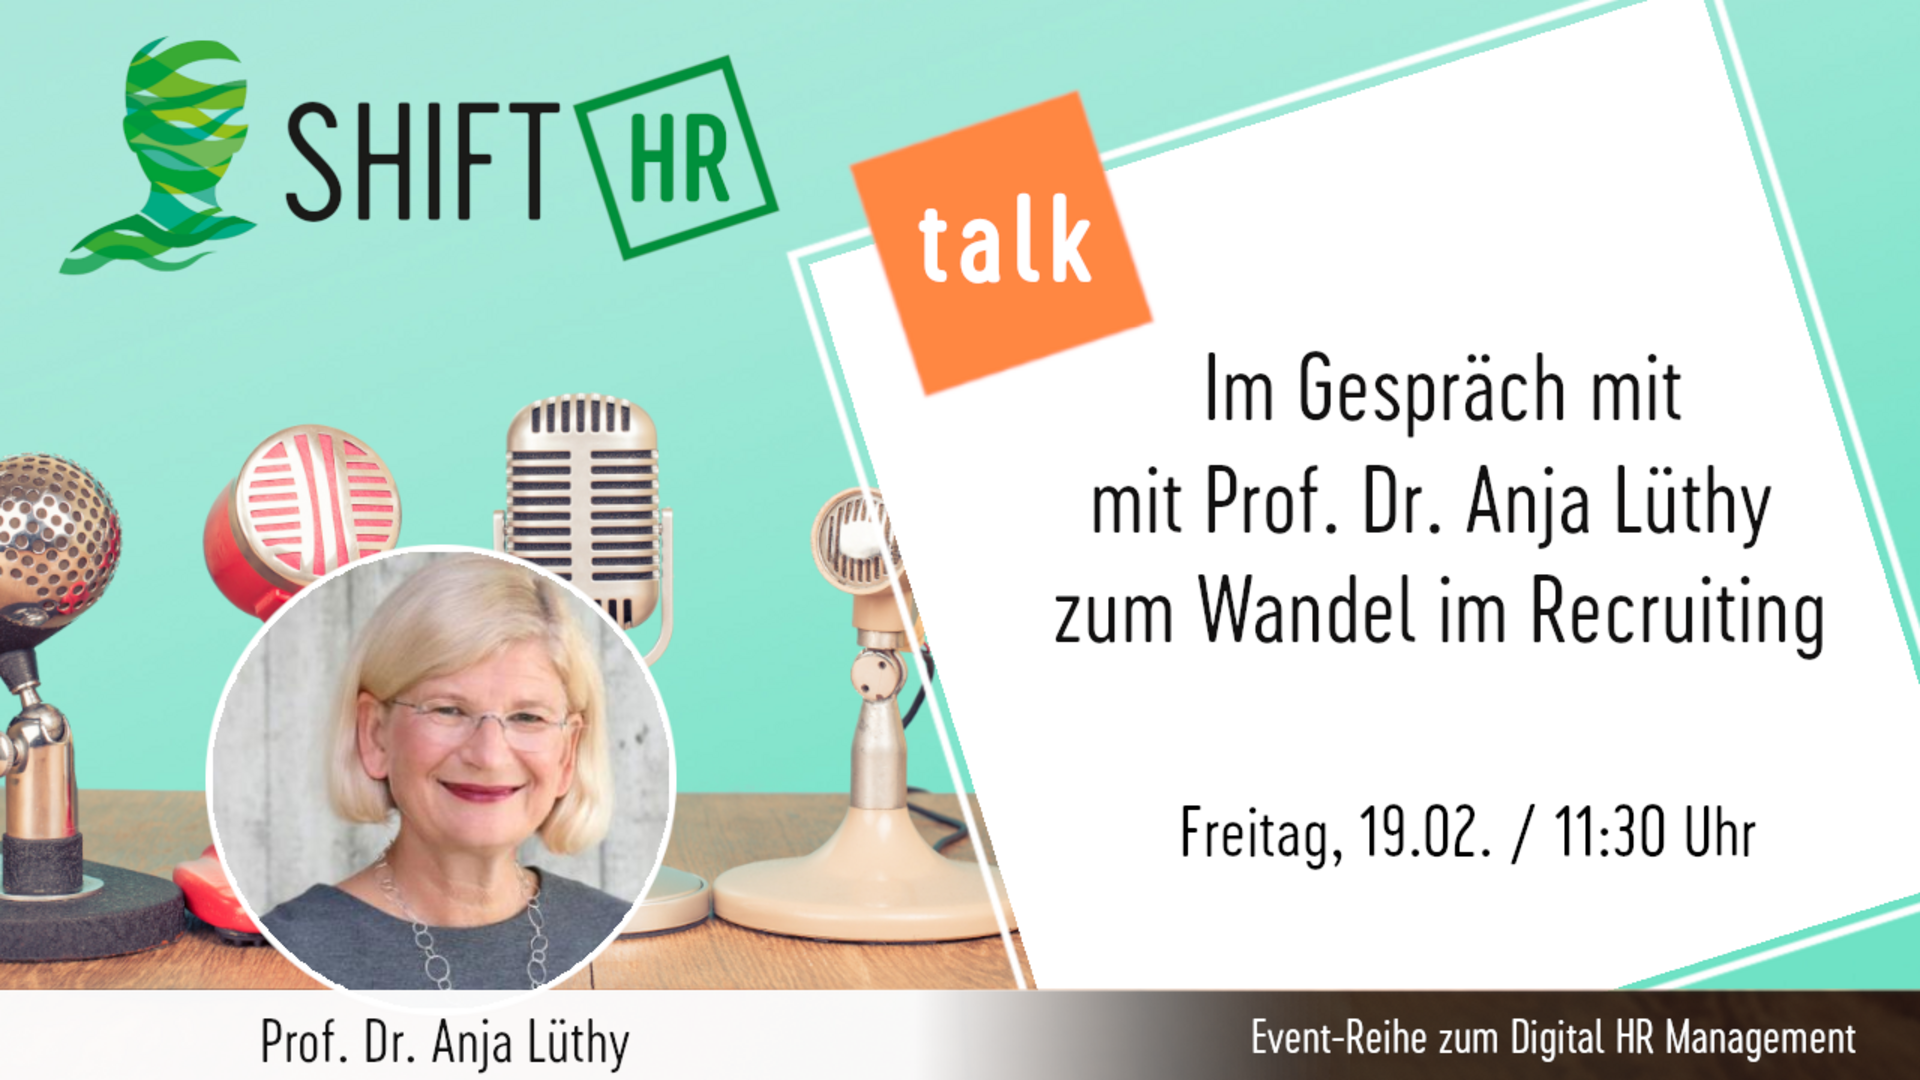 Im Gespräch mit Prof. Dr. Anja Lüthy zum Wandel im Recruiting